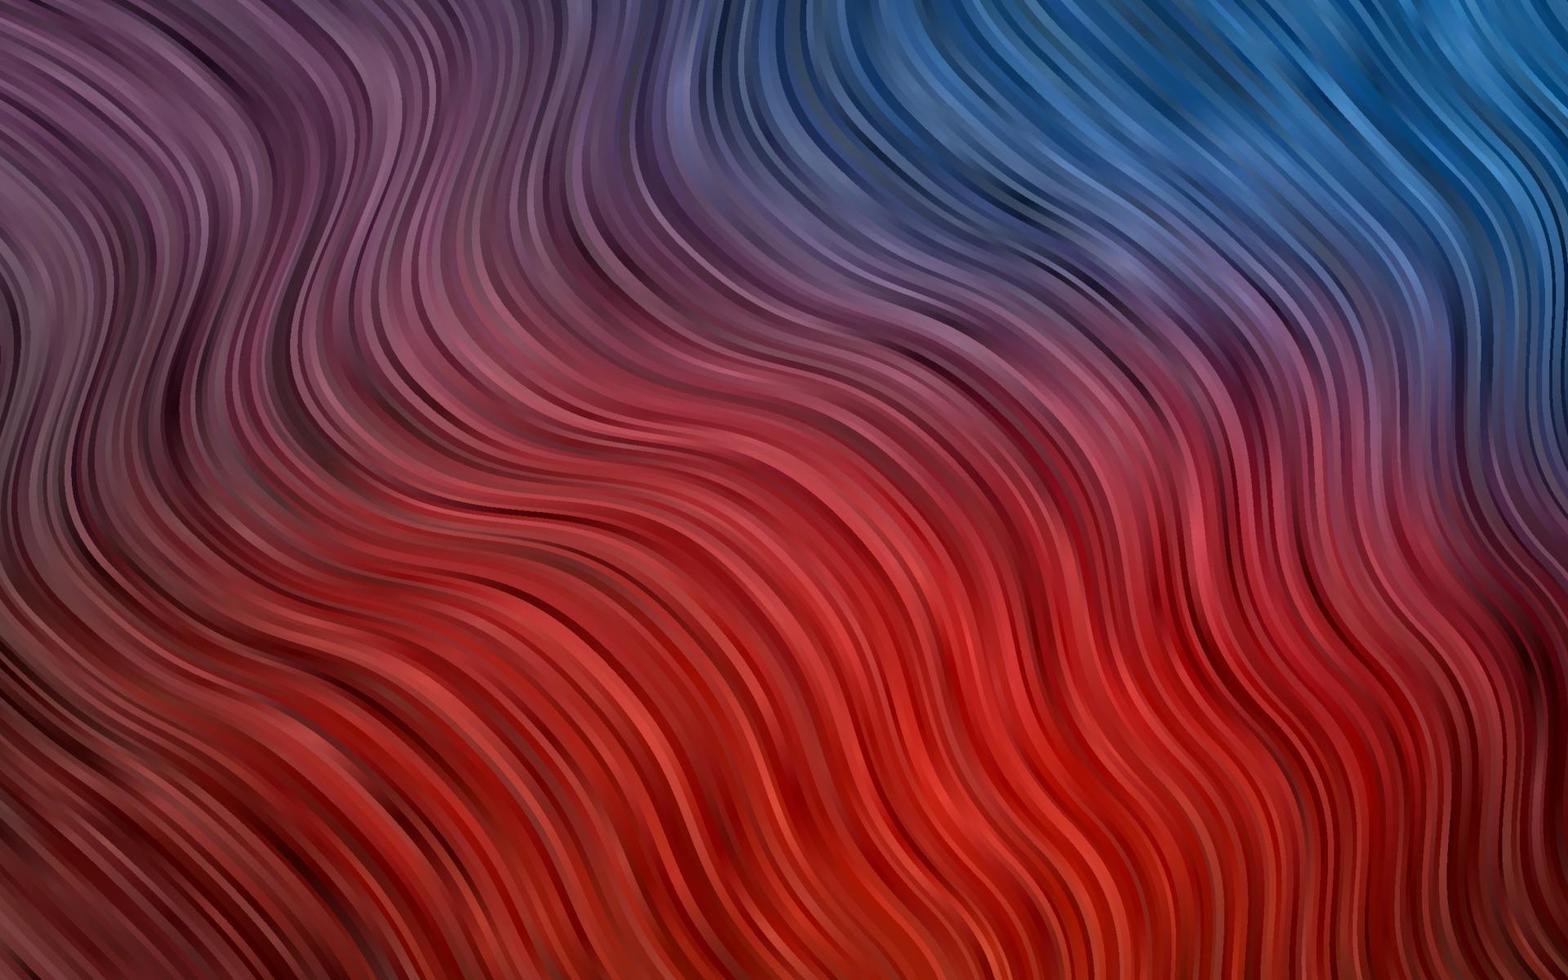 modelo de vetor azul e vermelho escuro com linhas dobradas.